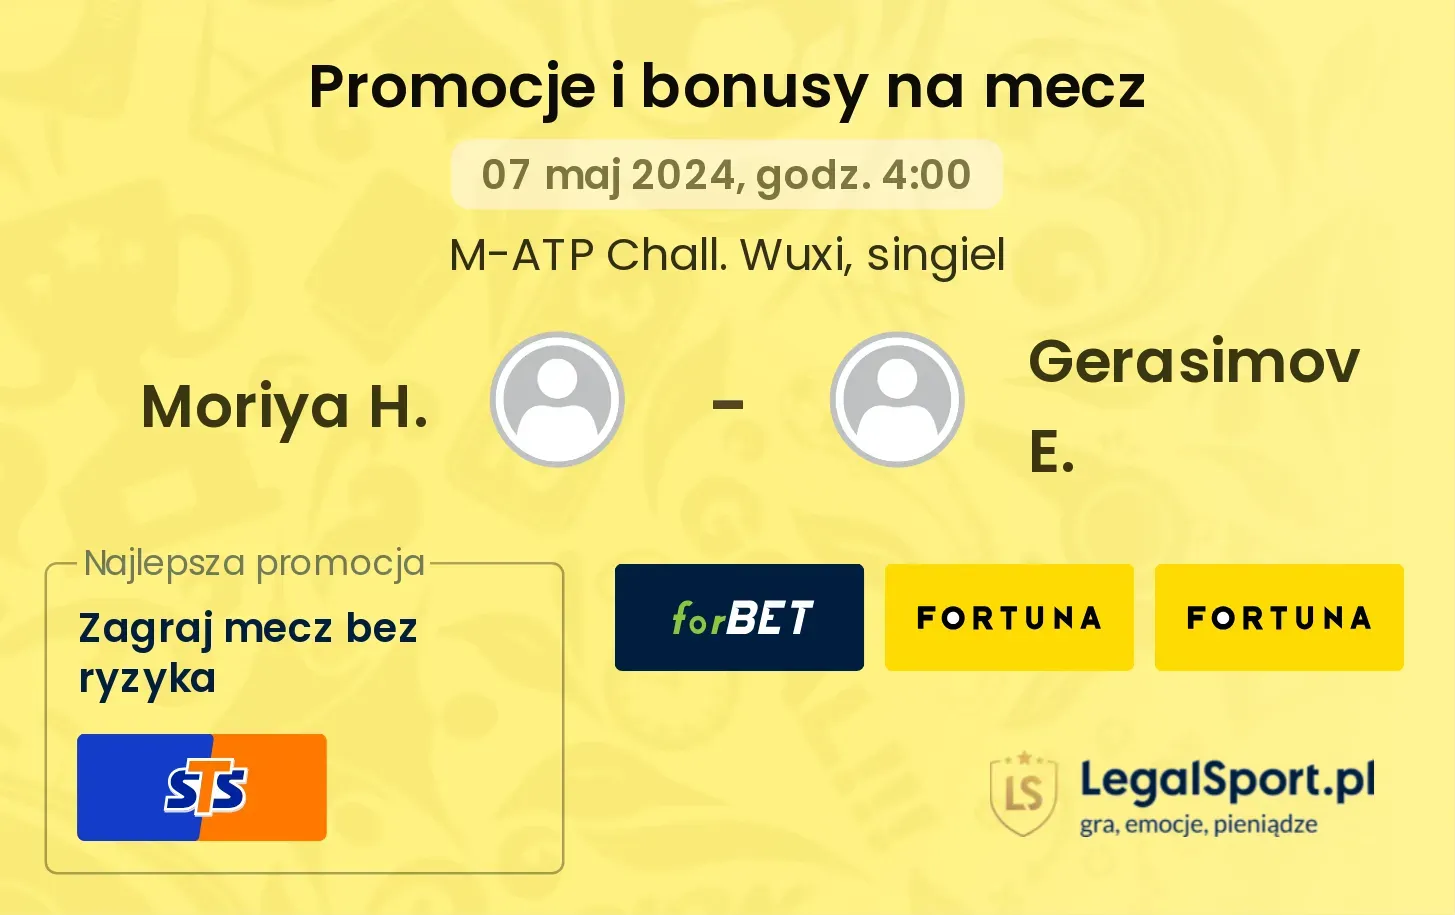 Moriya H. - Gerasimov E. promocje bonusy na mecz